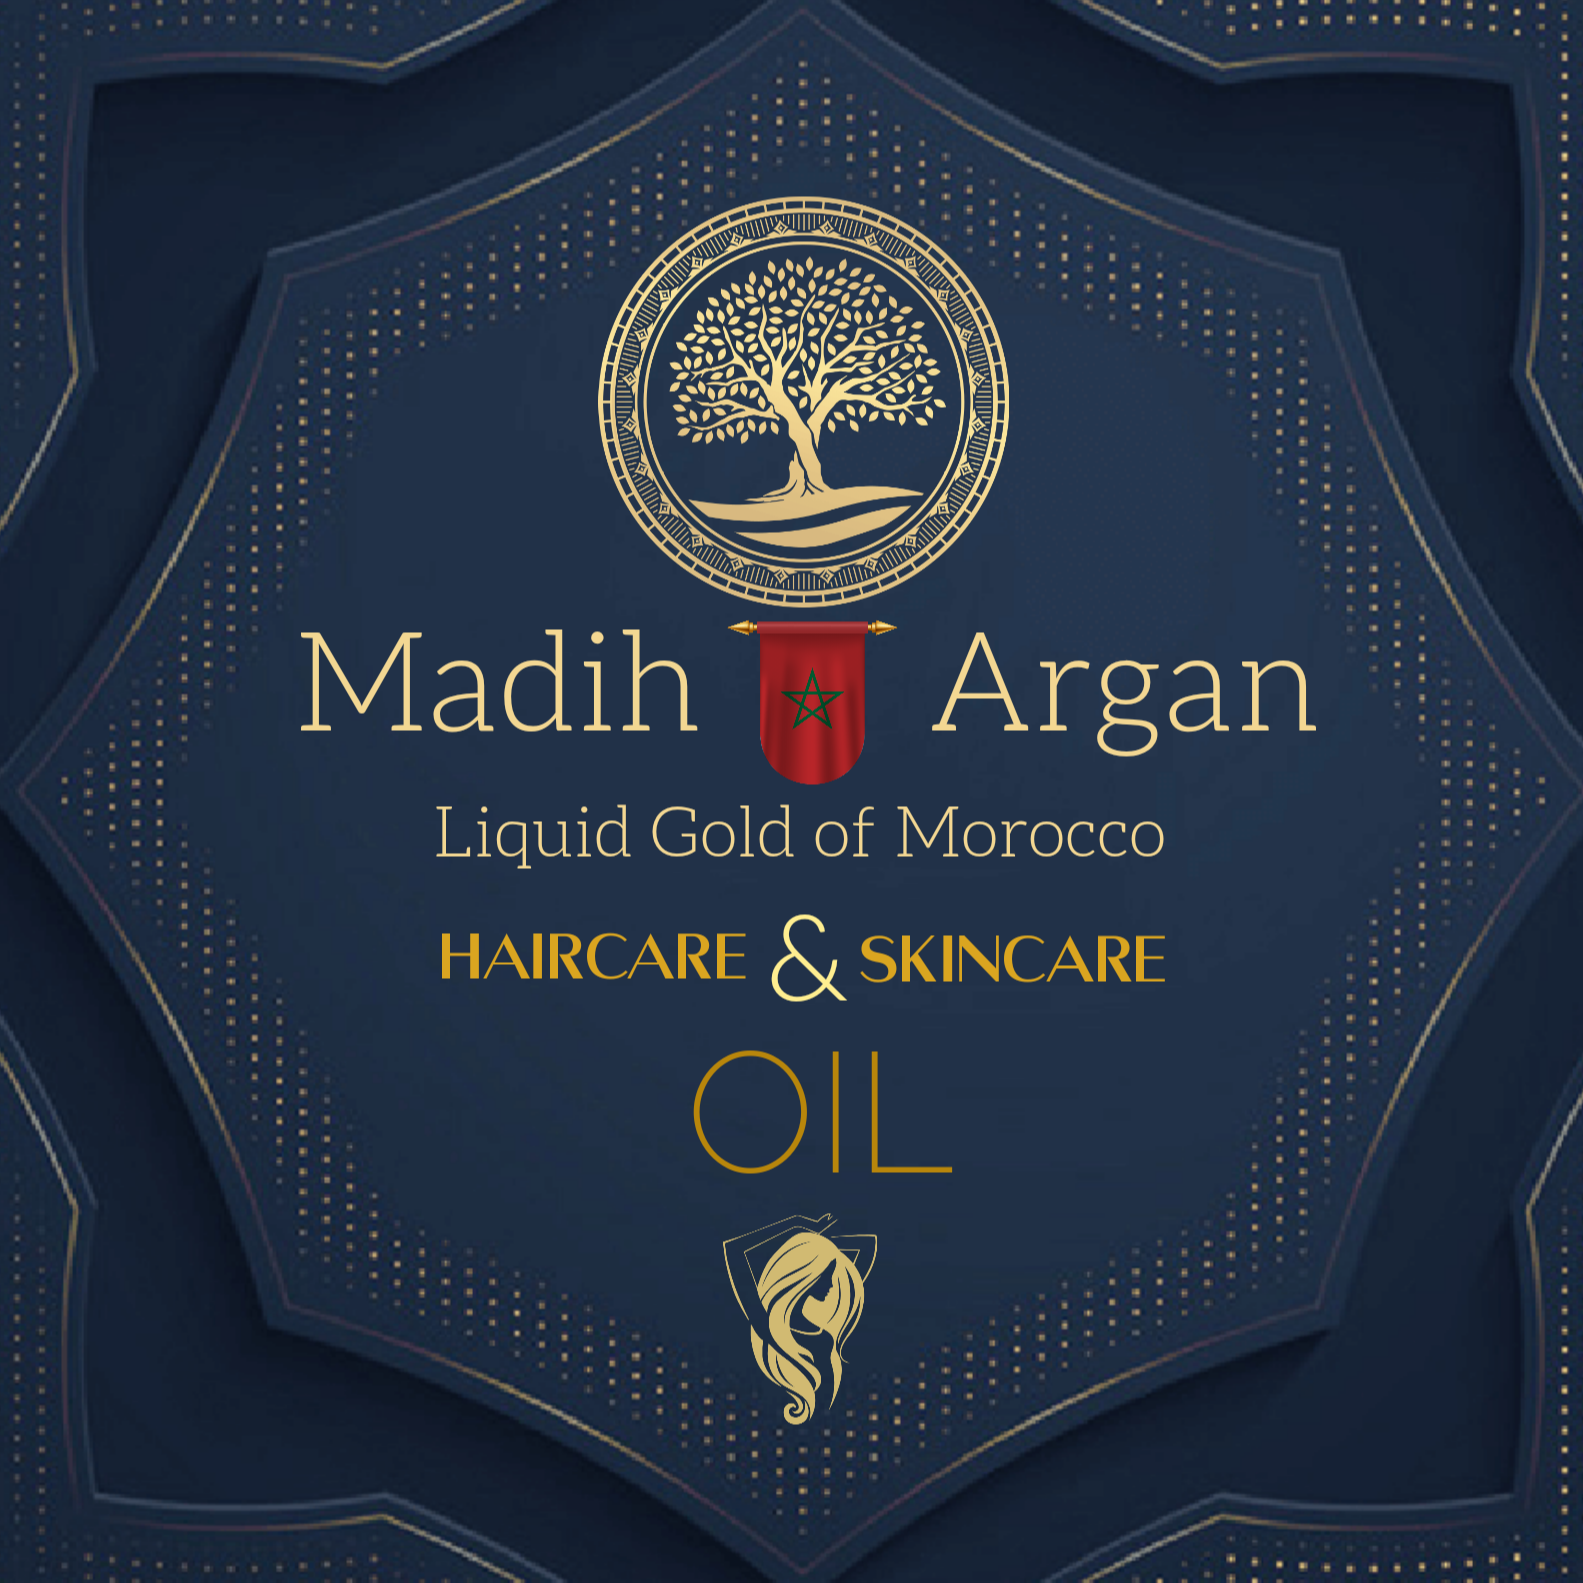 Madih Argan Cosmetics